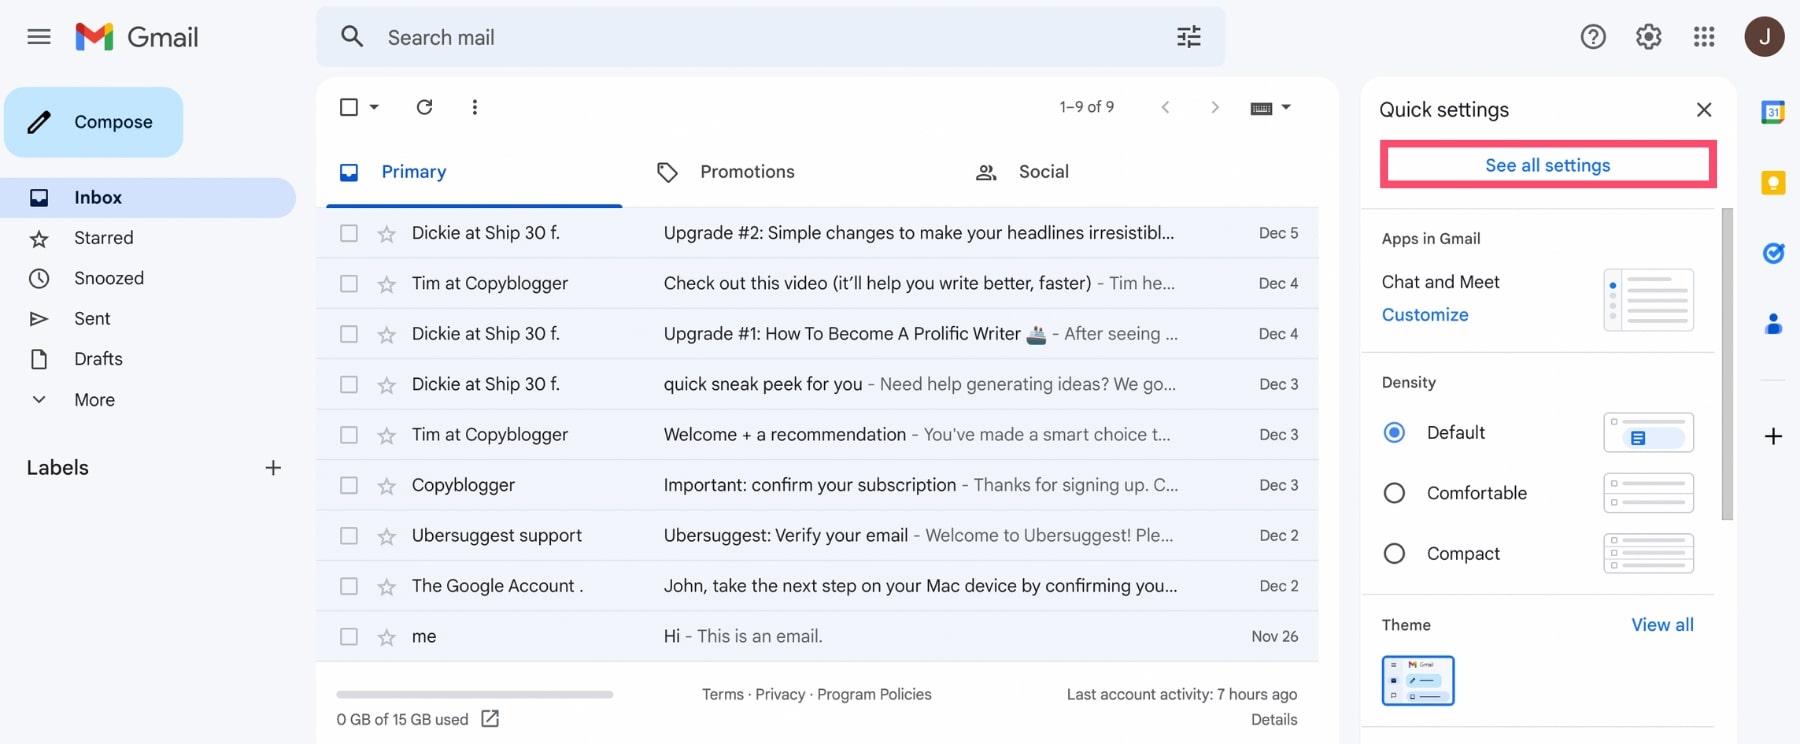 Ver todos los ajustes de Gmail